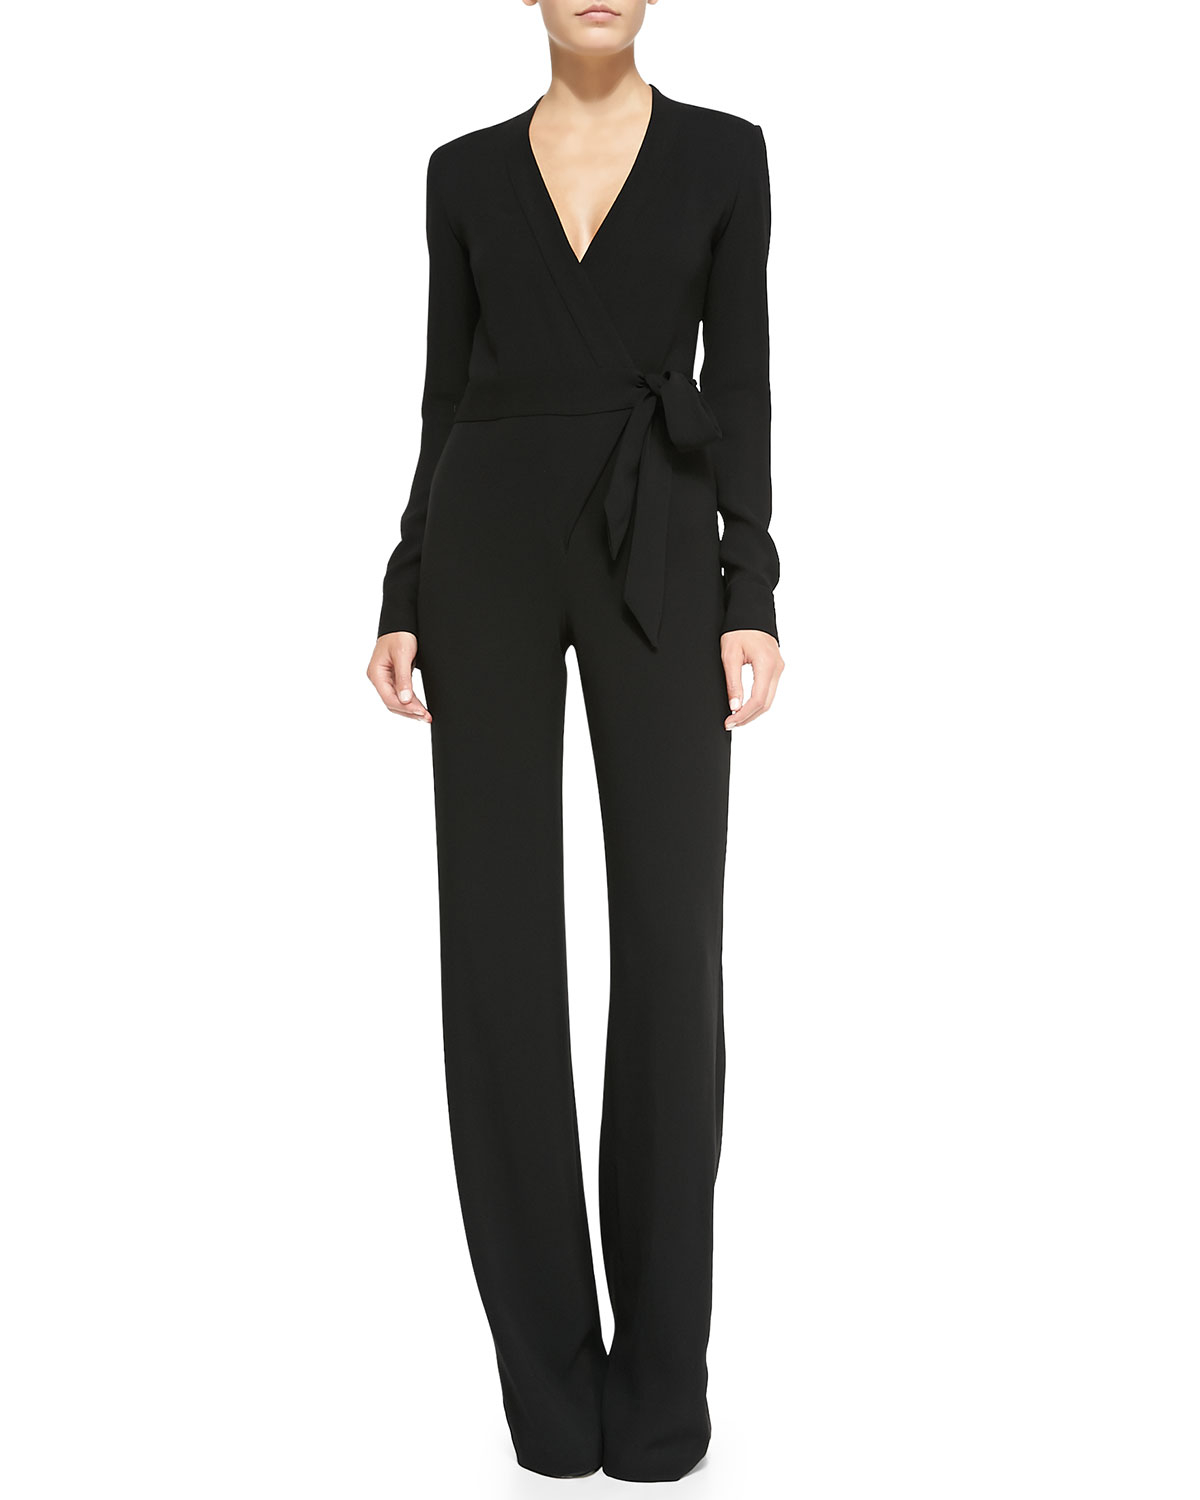 Diane von furstenberg Long-sleeve Jersey Wrap Jumpsuit in Black | Lyst